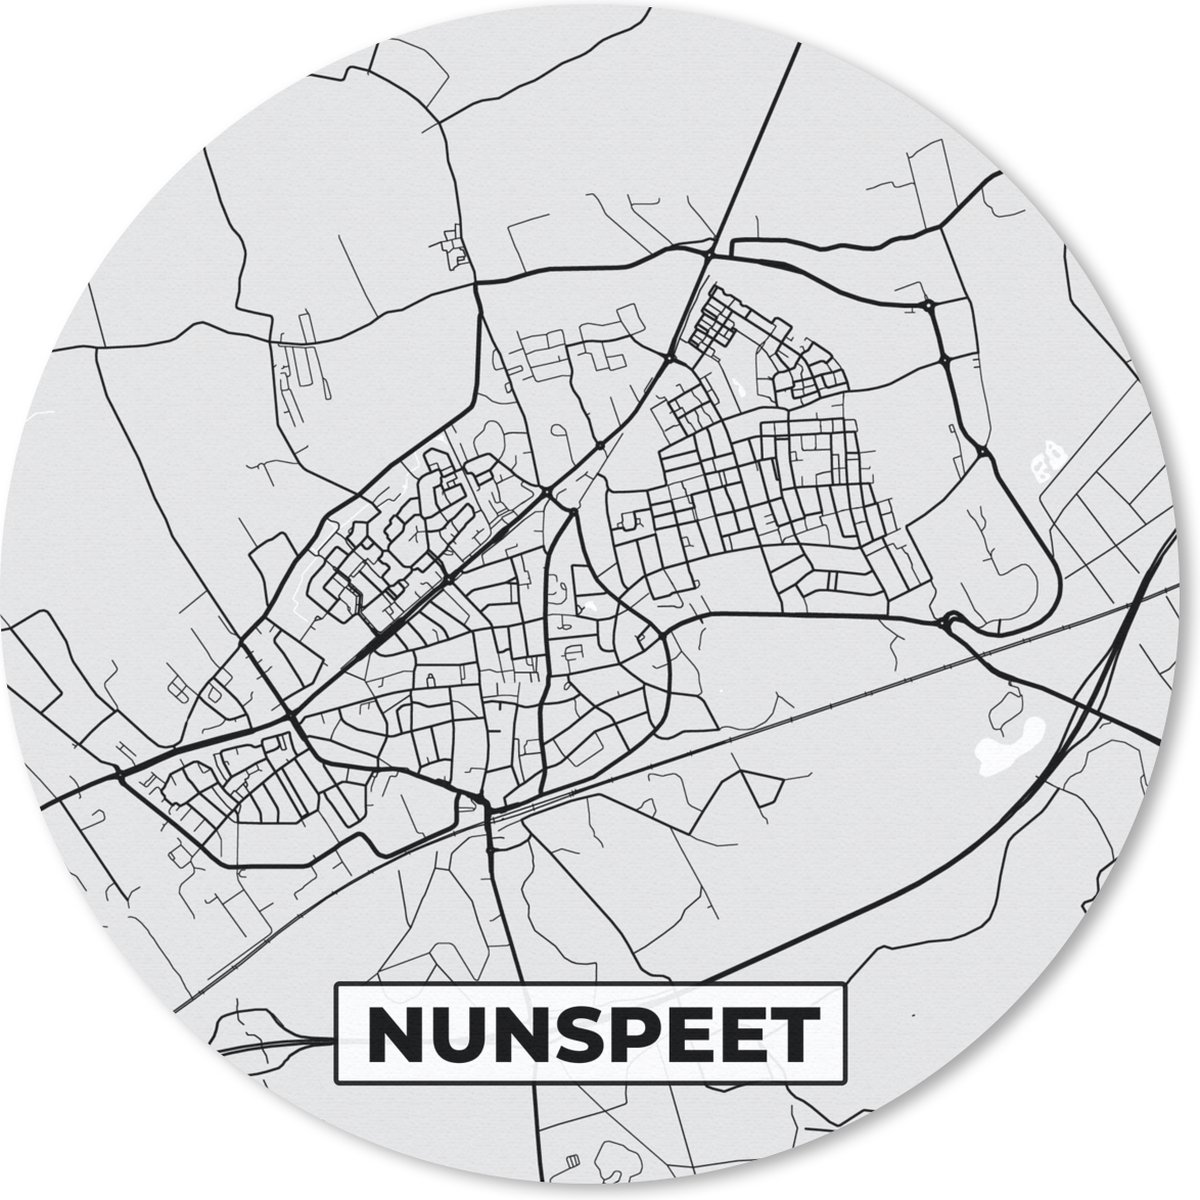 Muismat - Mousepad - Rond - Plattegrond - Nunspeet - Kaart - Stadskaart - 50x50 cm - Ronde muismat